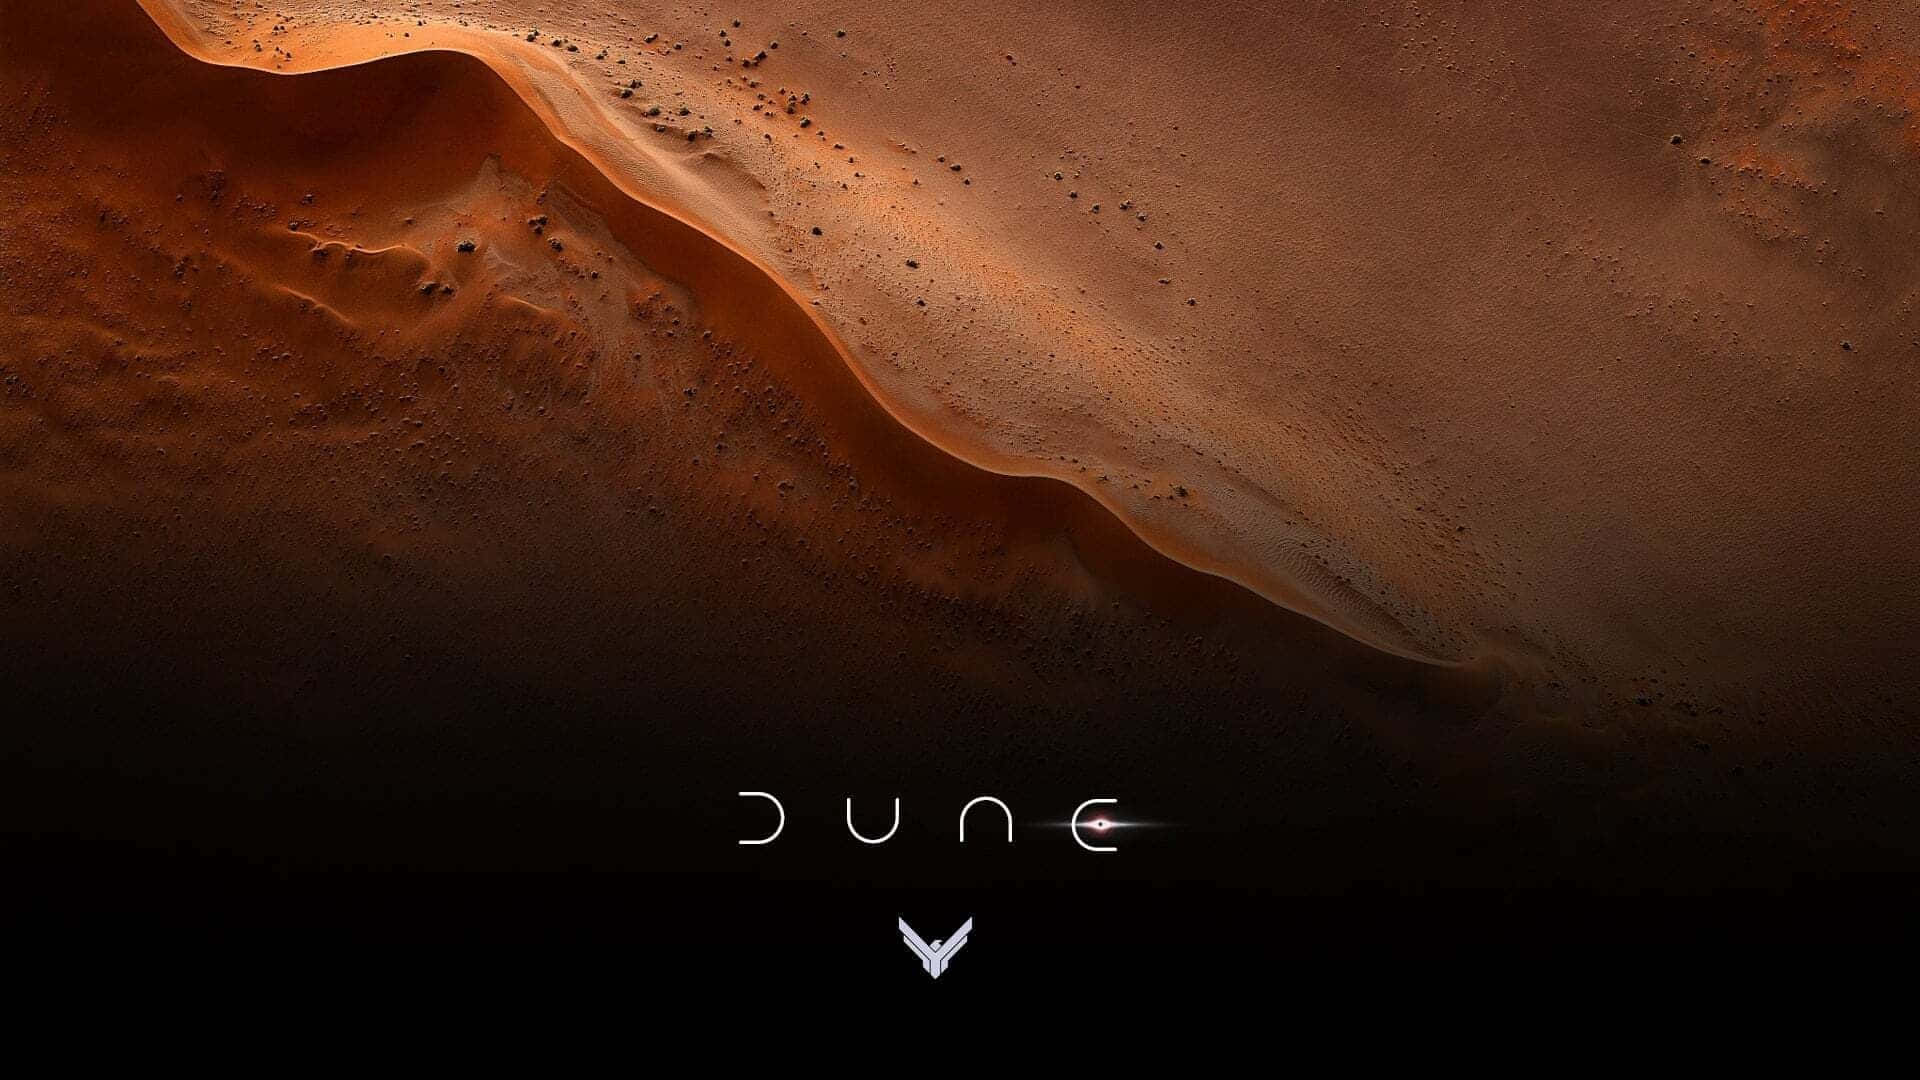 Traversing the dangerous desert of Dune